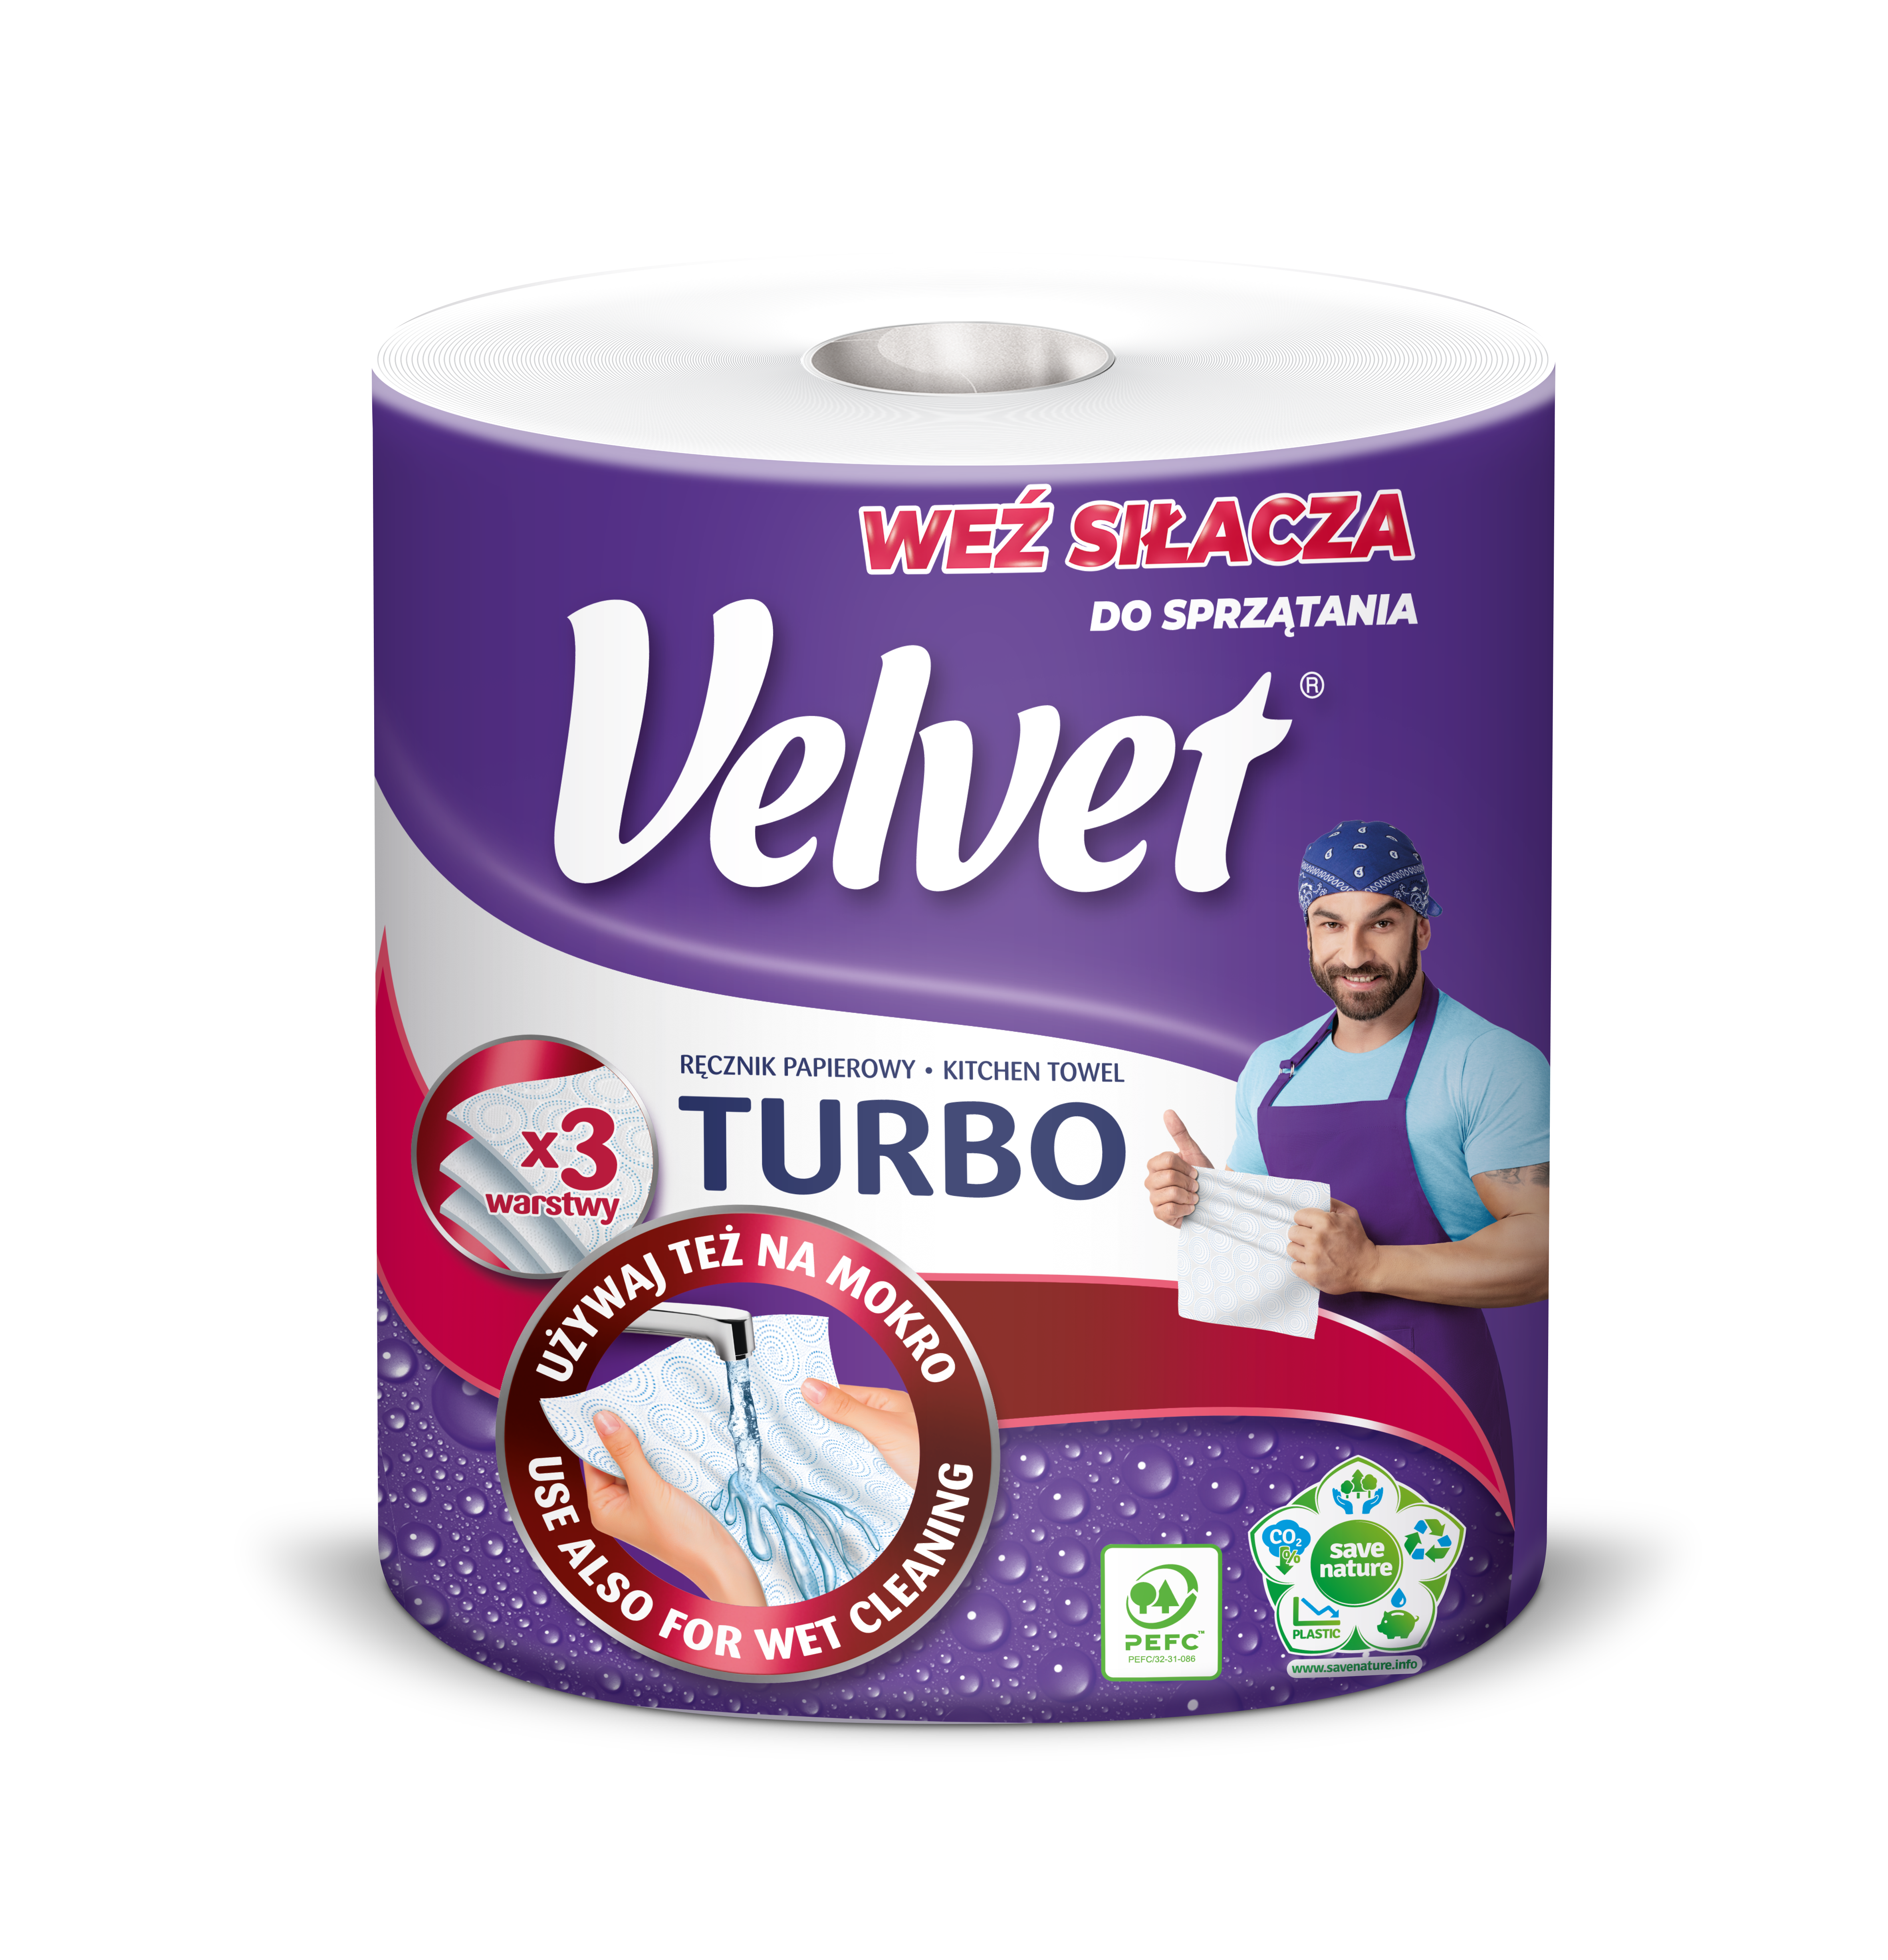 Velvet Care – Weź siłacza do sprzątania